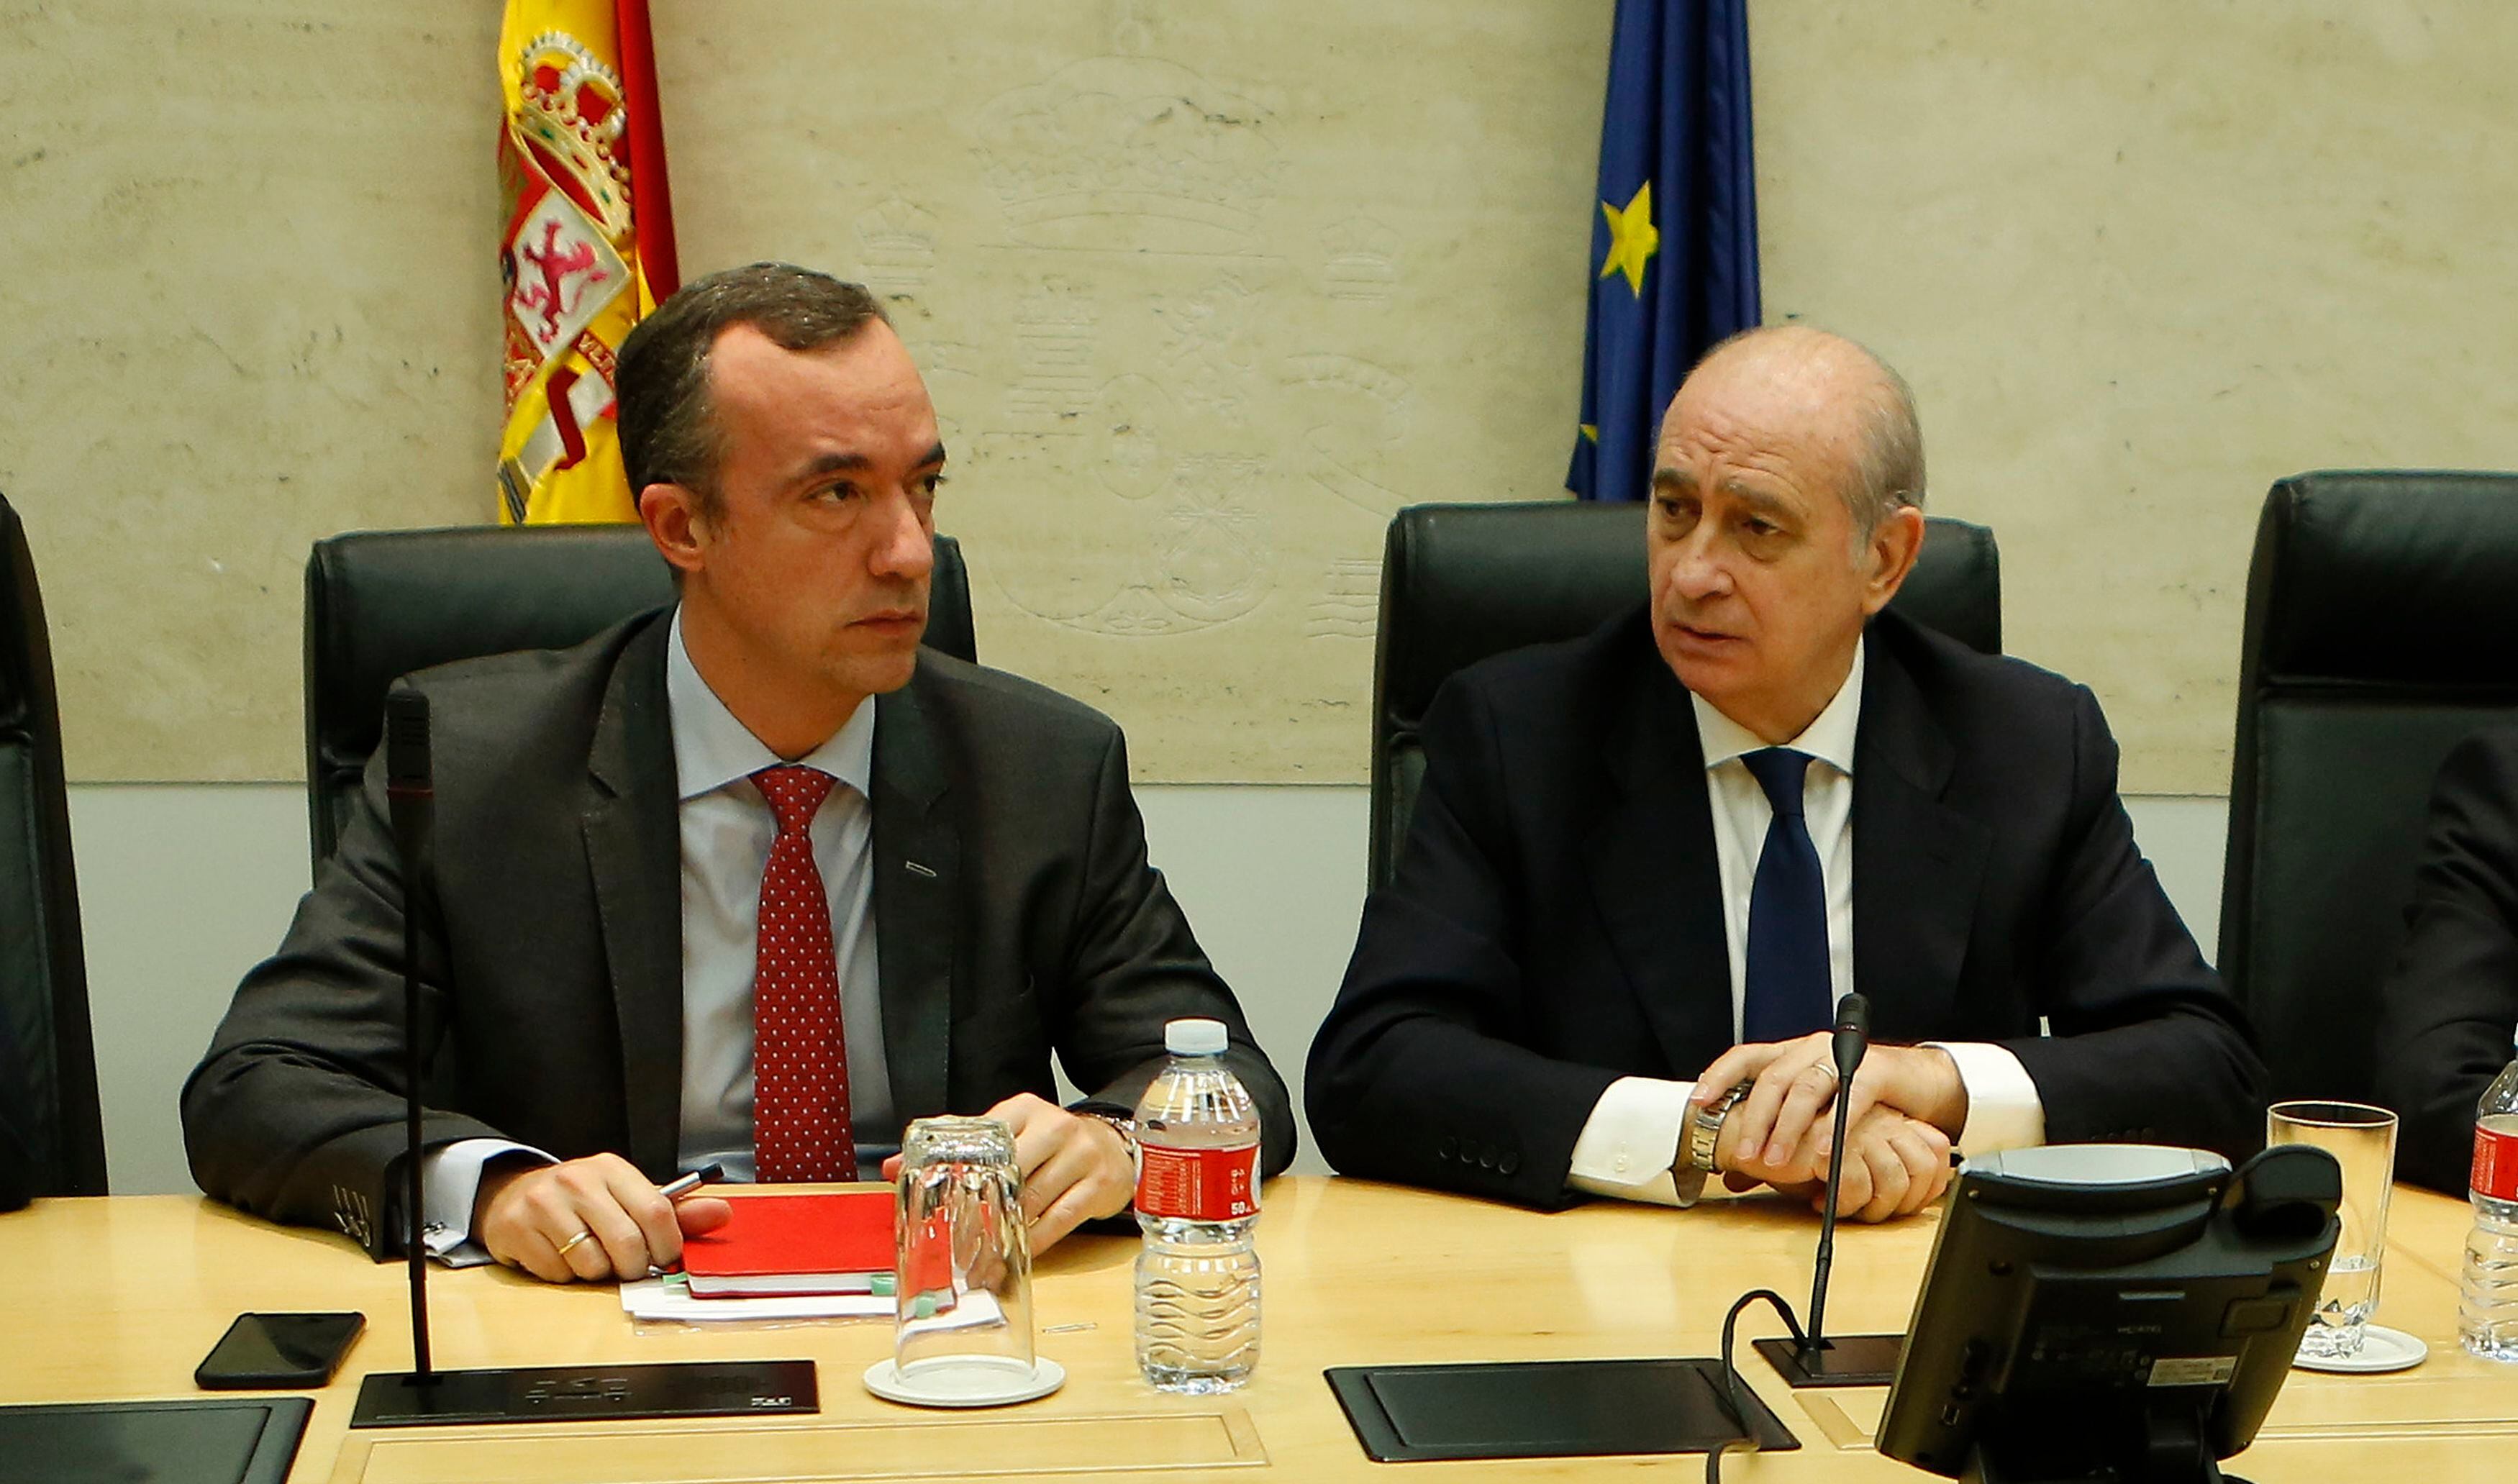 Francisco Martínez Vázquez y Jorge Fernández Díaz, en una reunión tras los atentados de Bruselas en marzo de 2016.